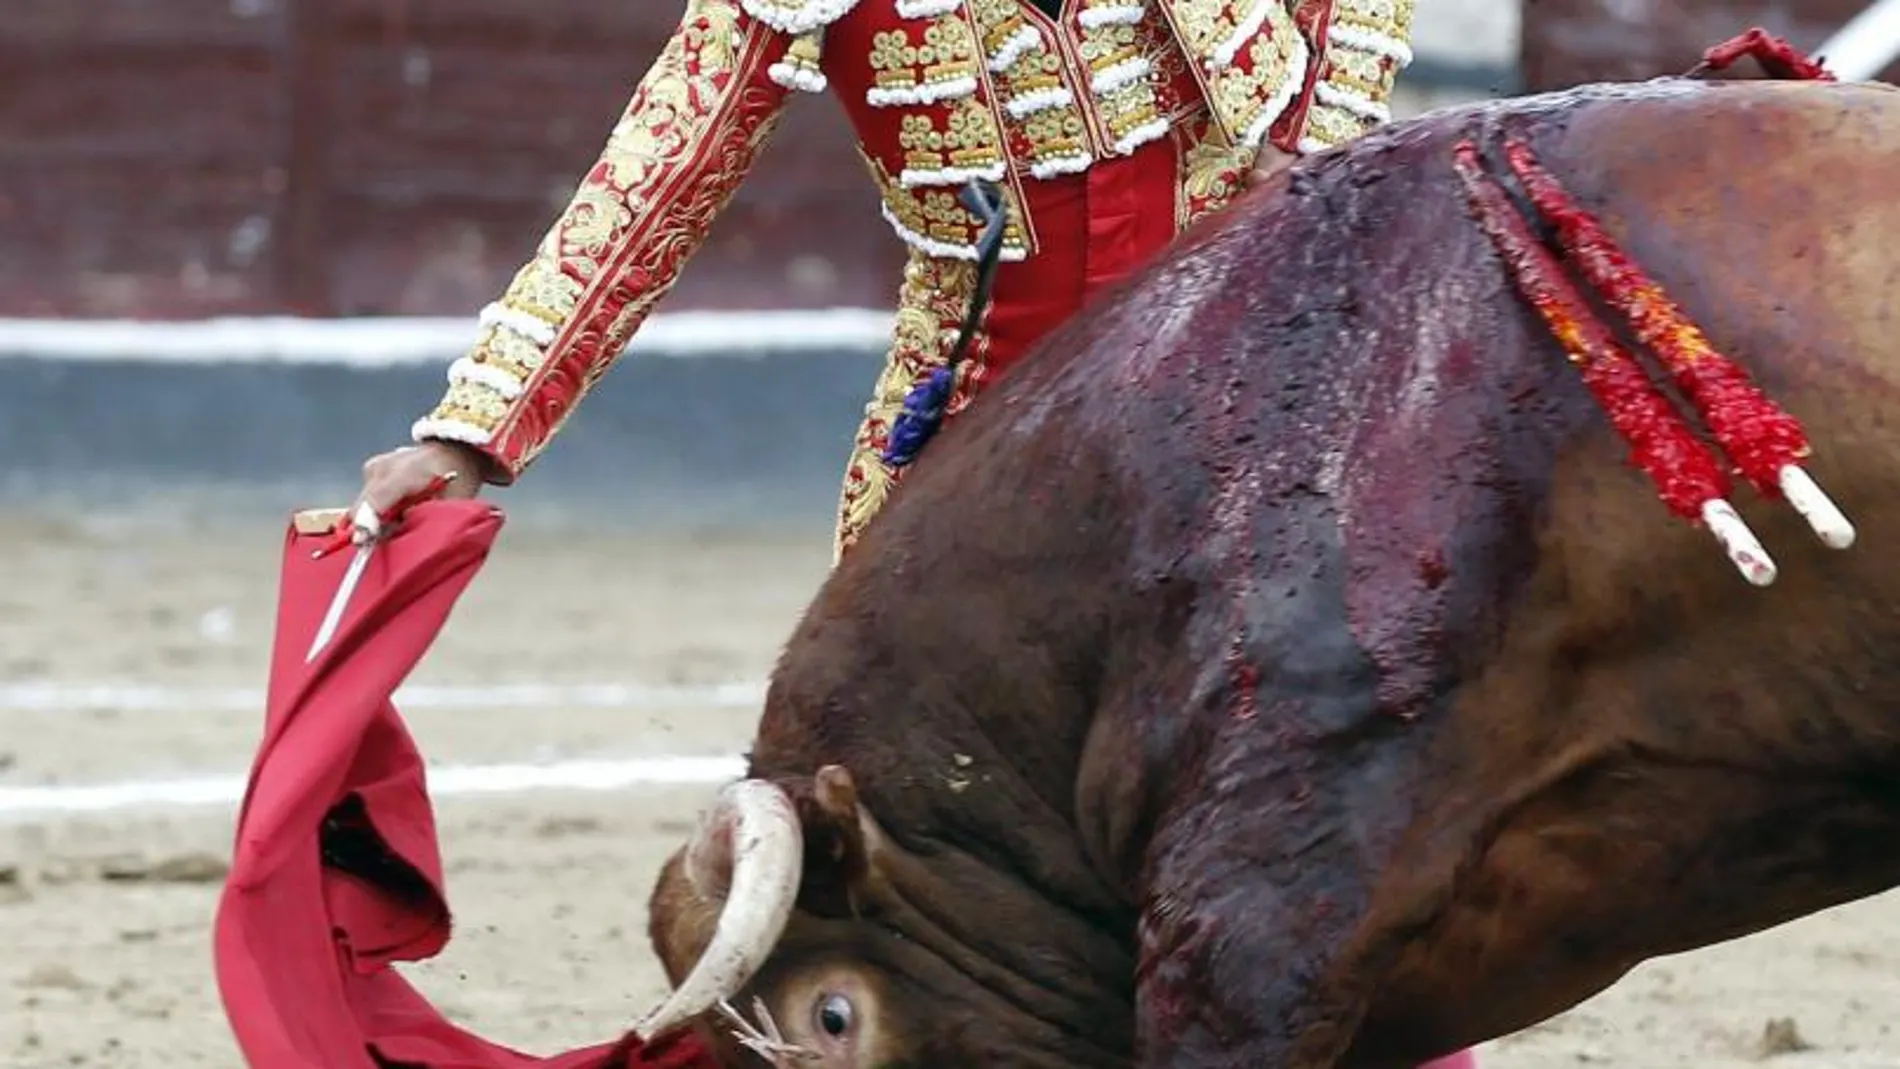 Antonio Ferrera, triunfador de la tarde tras cortar dos orejas a su primer toro en San Sebastián de los Reyes